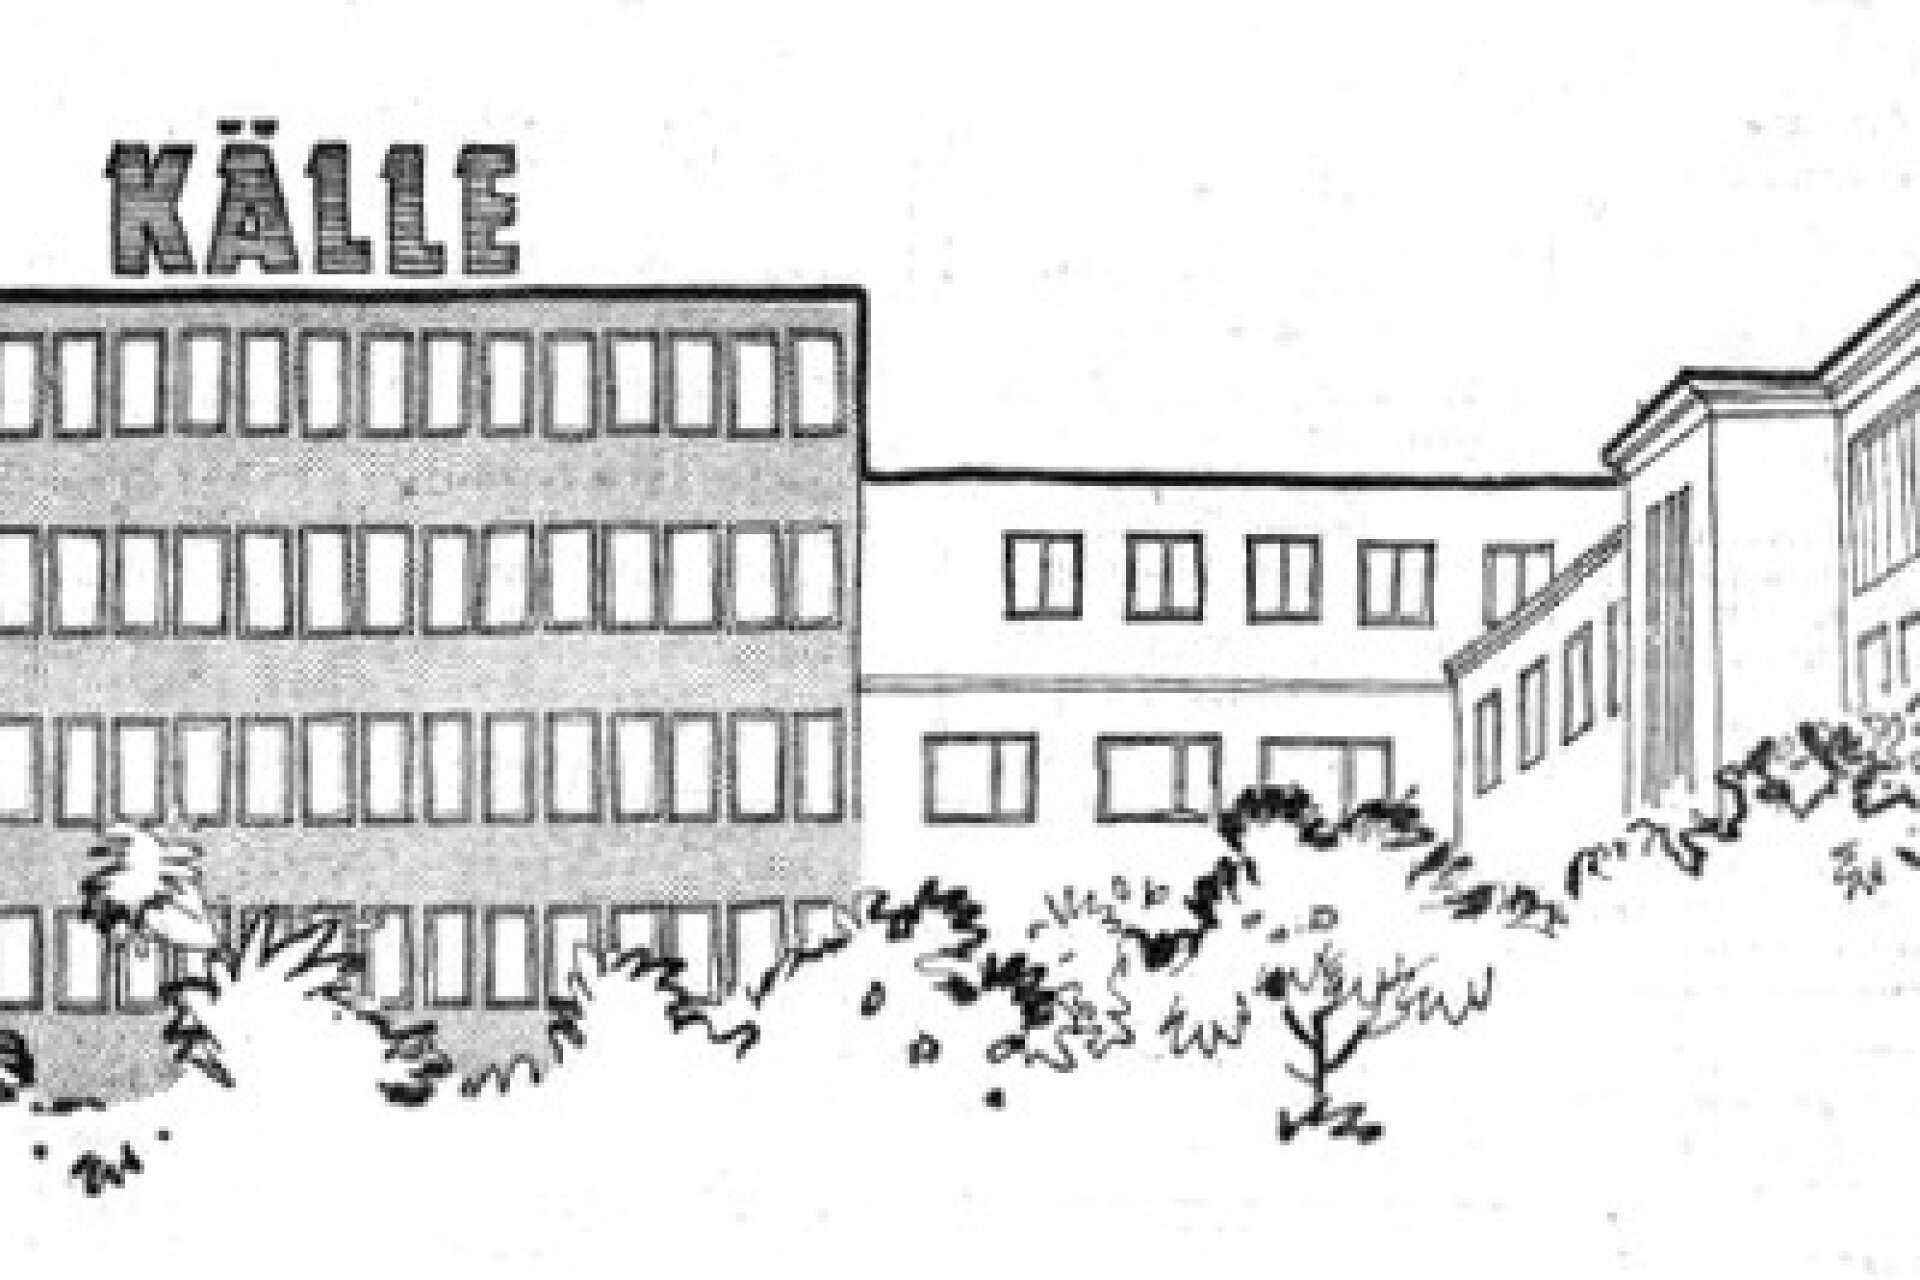 I en annons i Dagens Nyheter på luciadagen 1960 fanns en bild som visade vad som var på gång. Huset till vänster skulle byggas. Det skedde 1961-1962 och gav nya kontorslokaler.